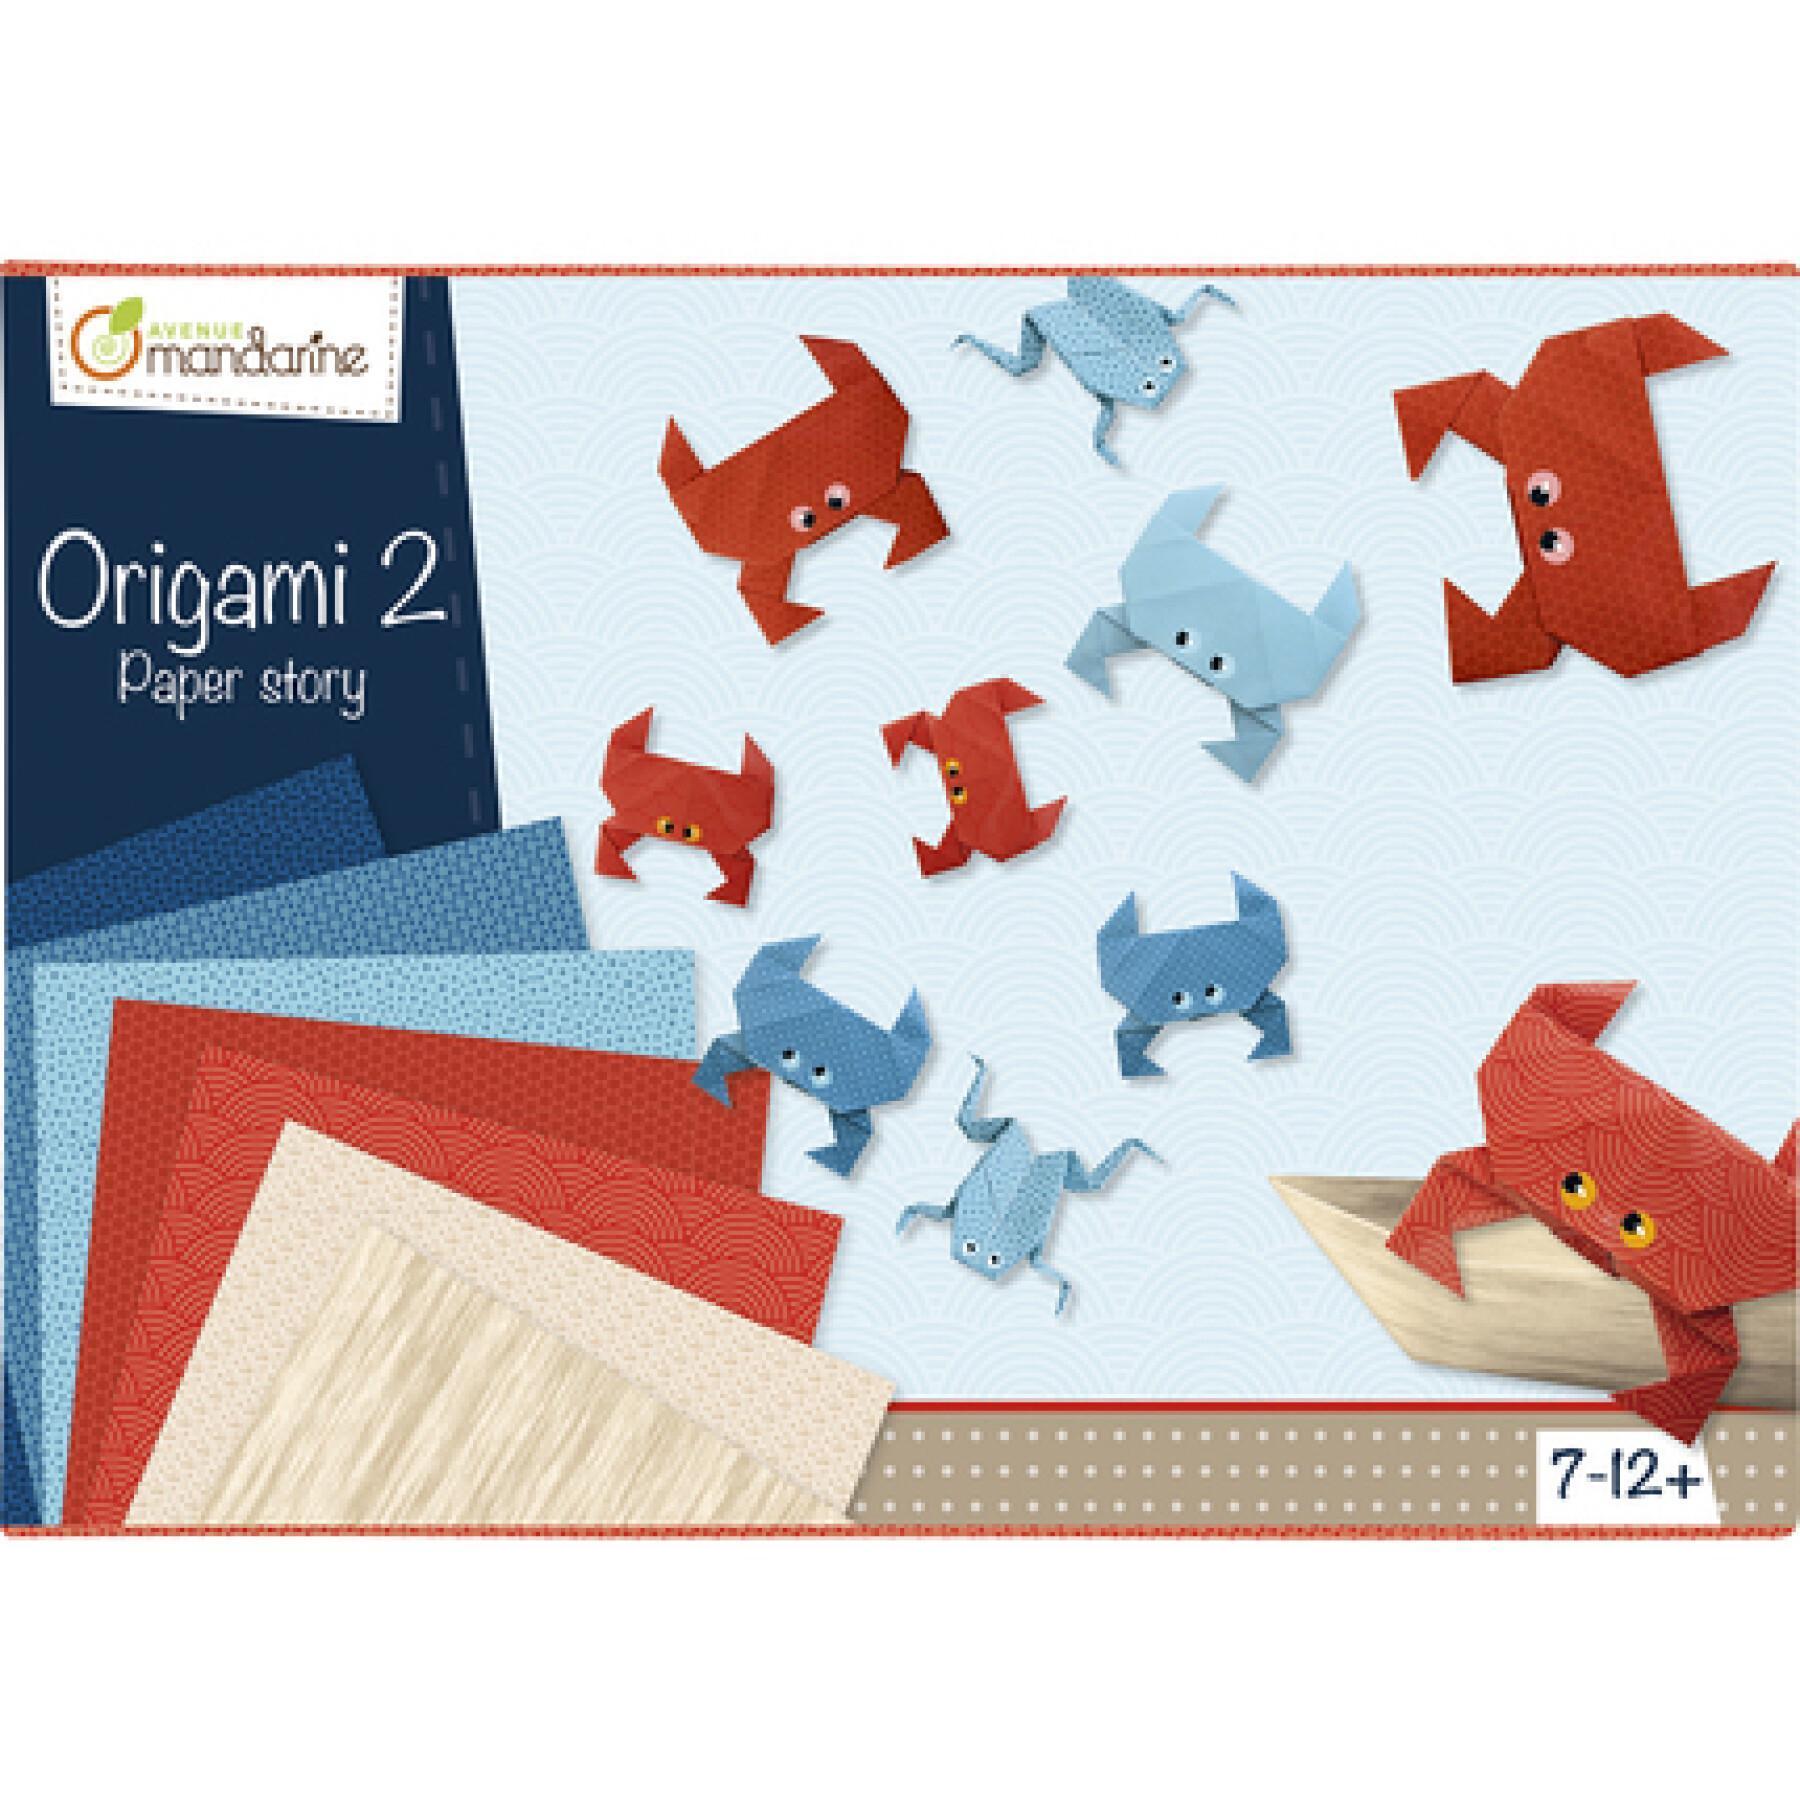 Creatieve doos - origami 2 Avenue Mandarine